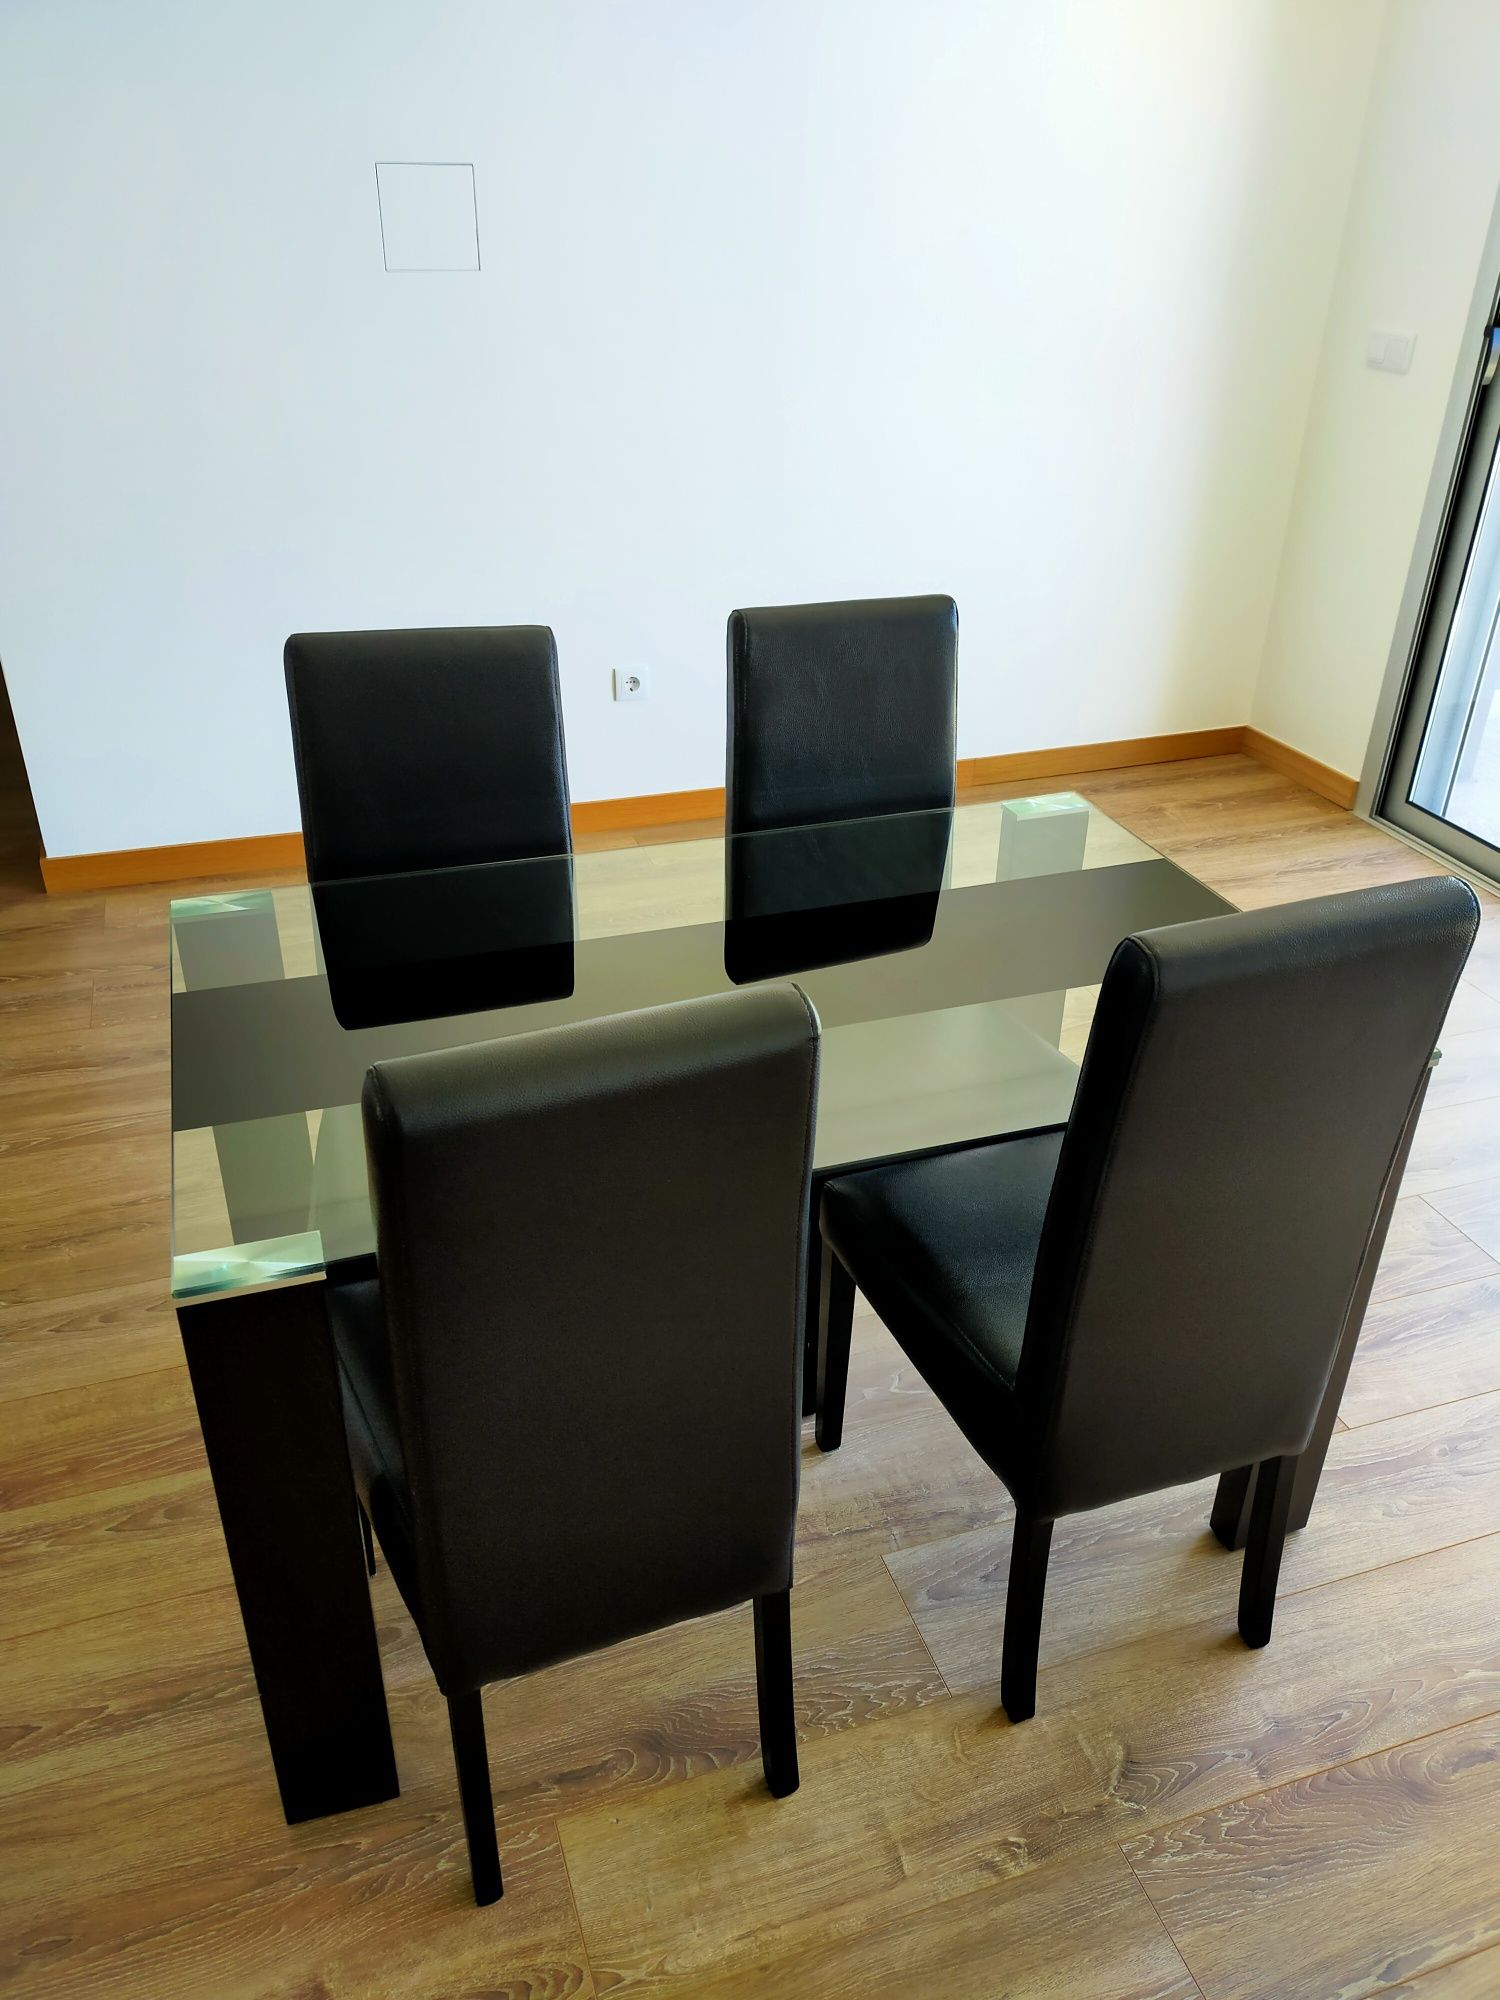 Mesa jantar e cadeiras